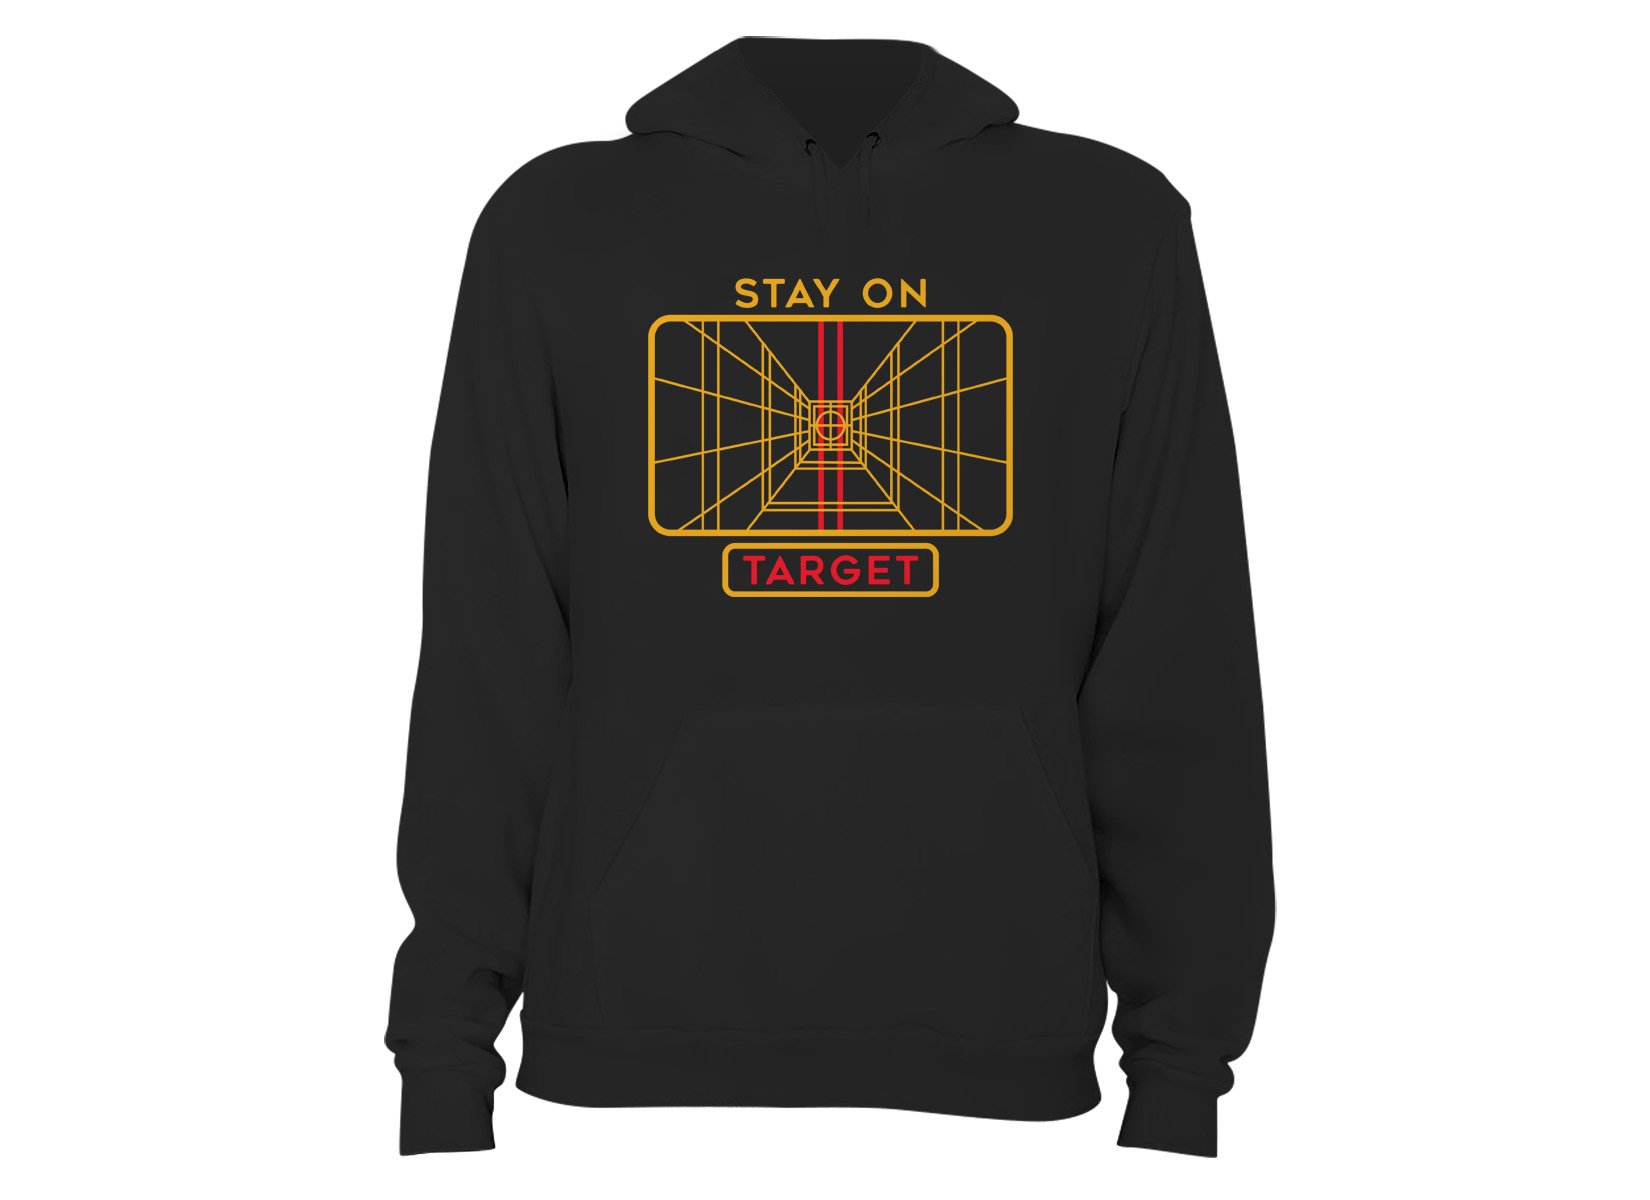 Stay on Target Star Wars Hoodies